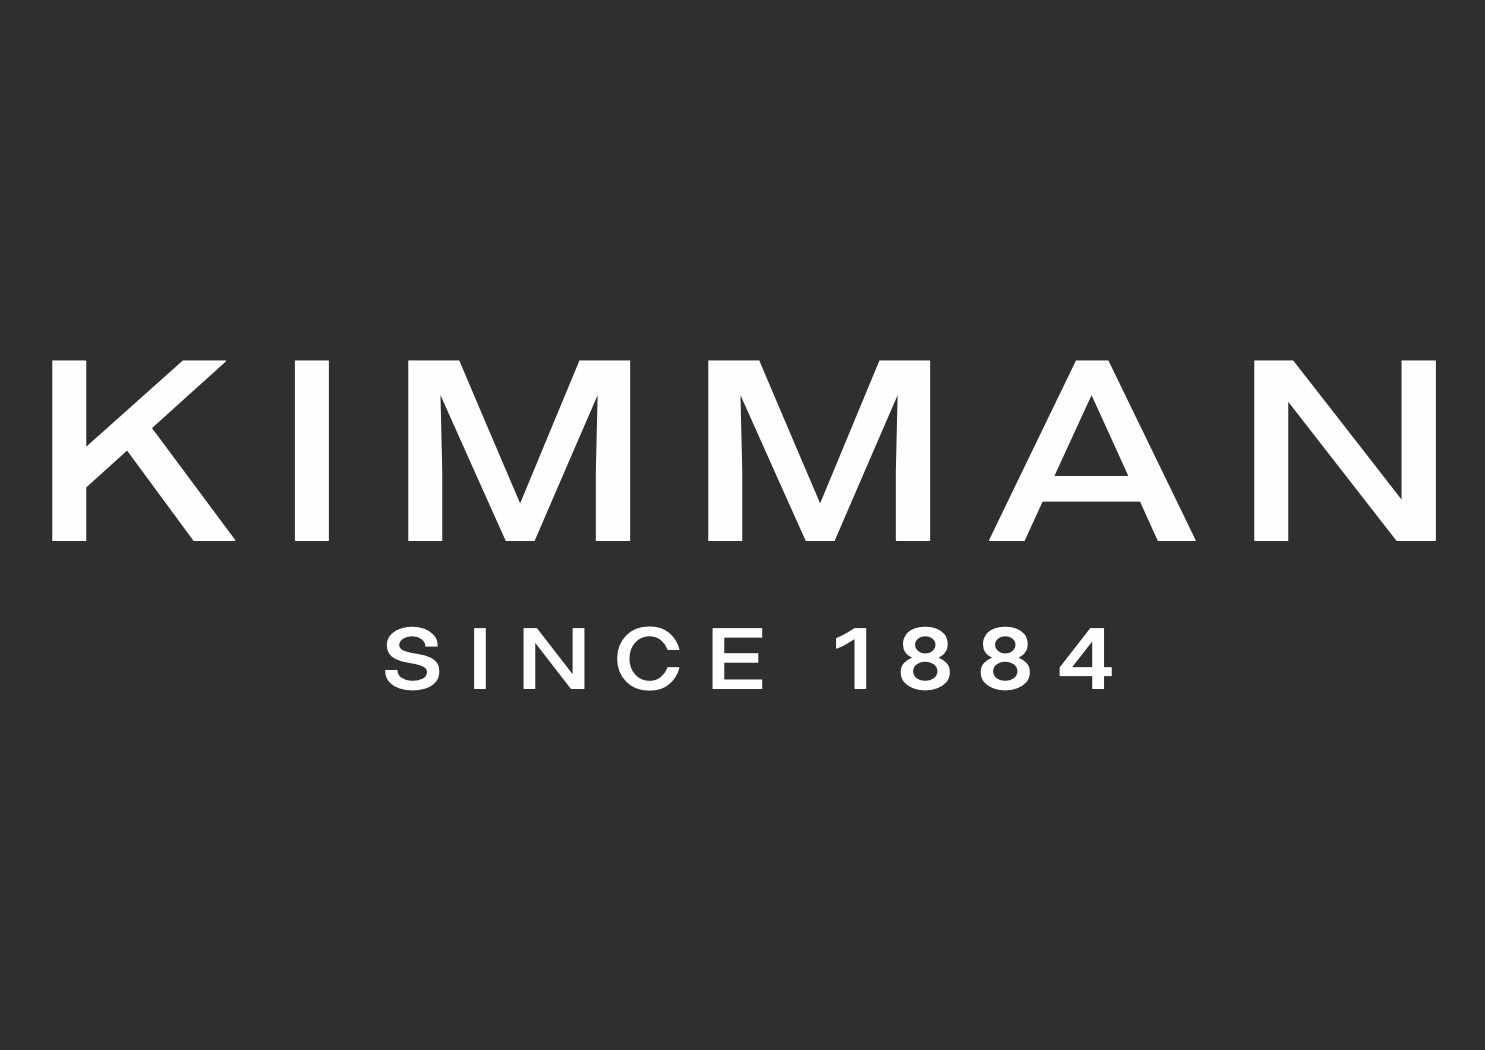 Kimman Haarlem BV logo